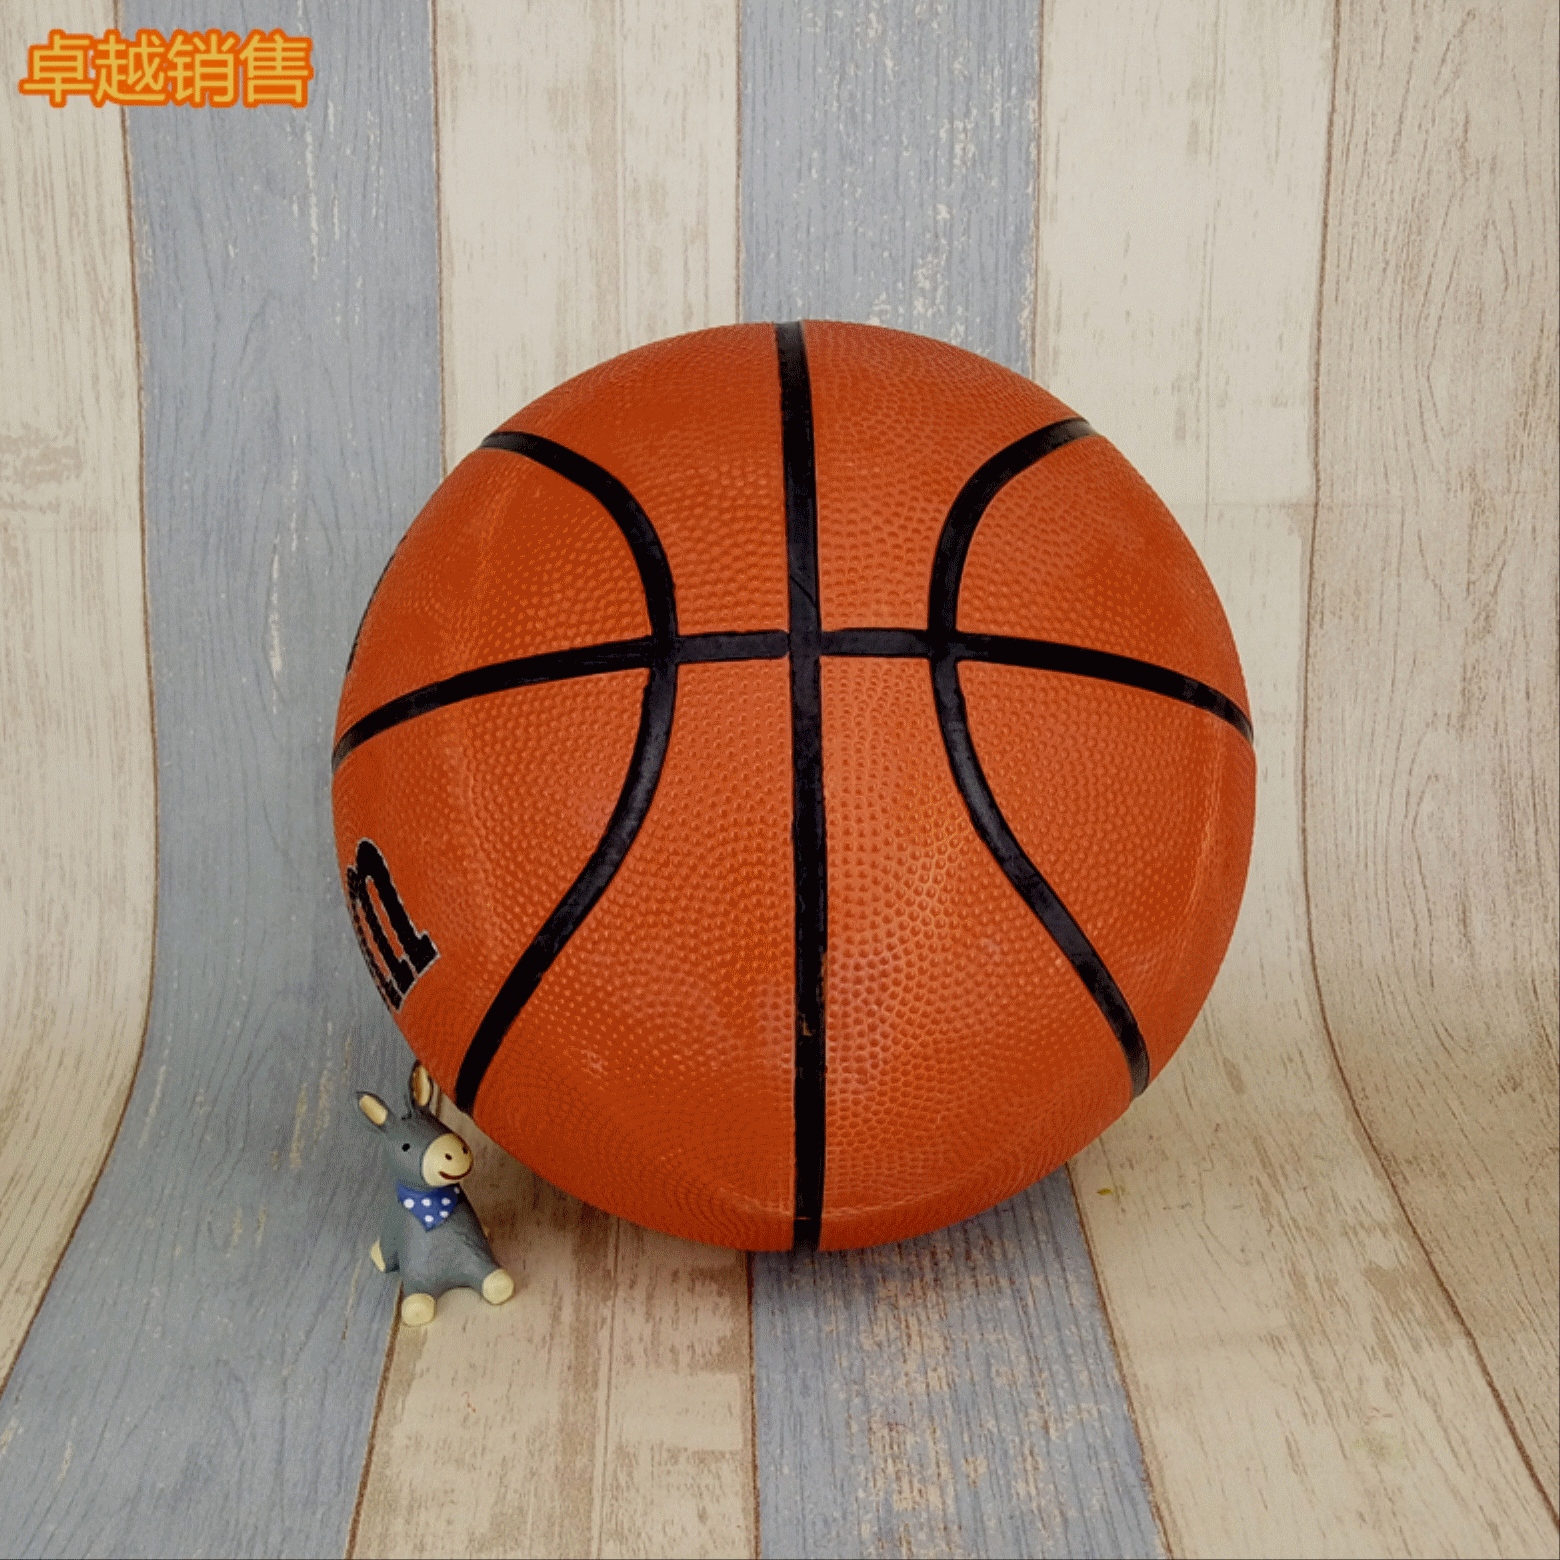 Ballon de basket 1995151